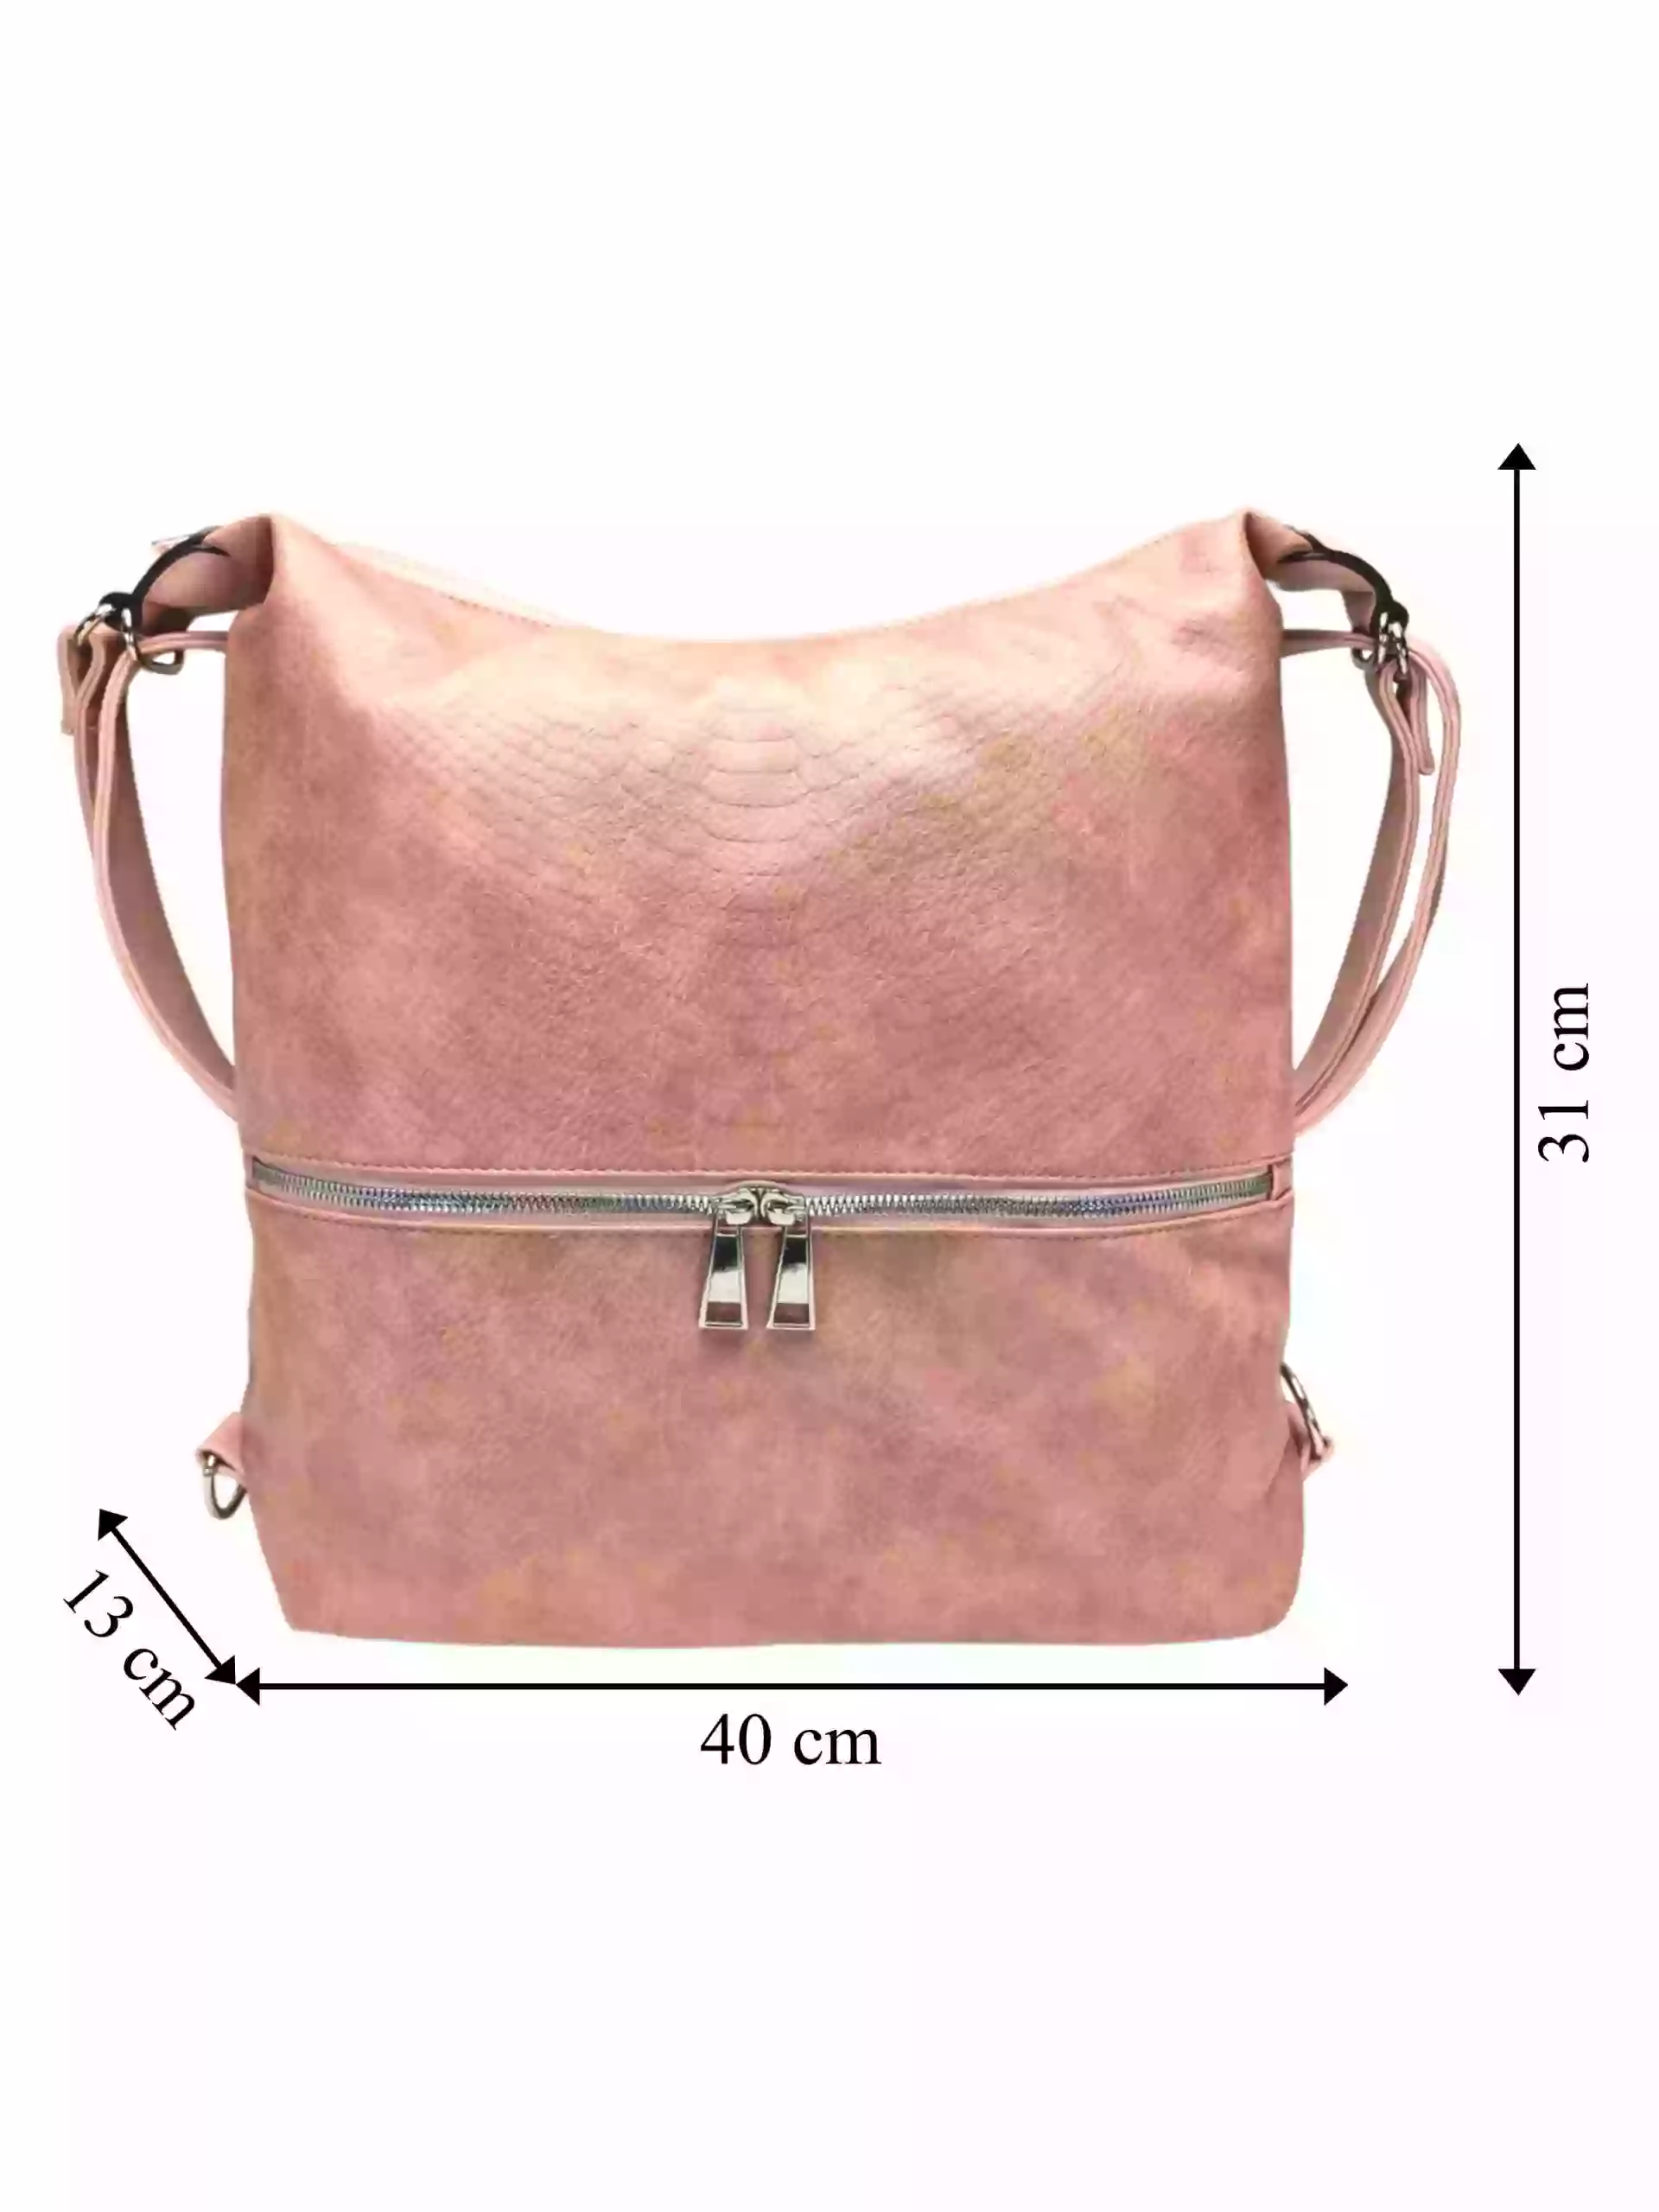 Moderní starorůžový kabelko-batoh z eko kůže, Tapple, H190010, přední strana kabelko-batohu 2v1